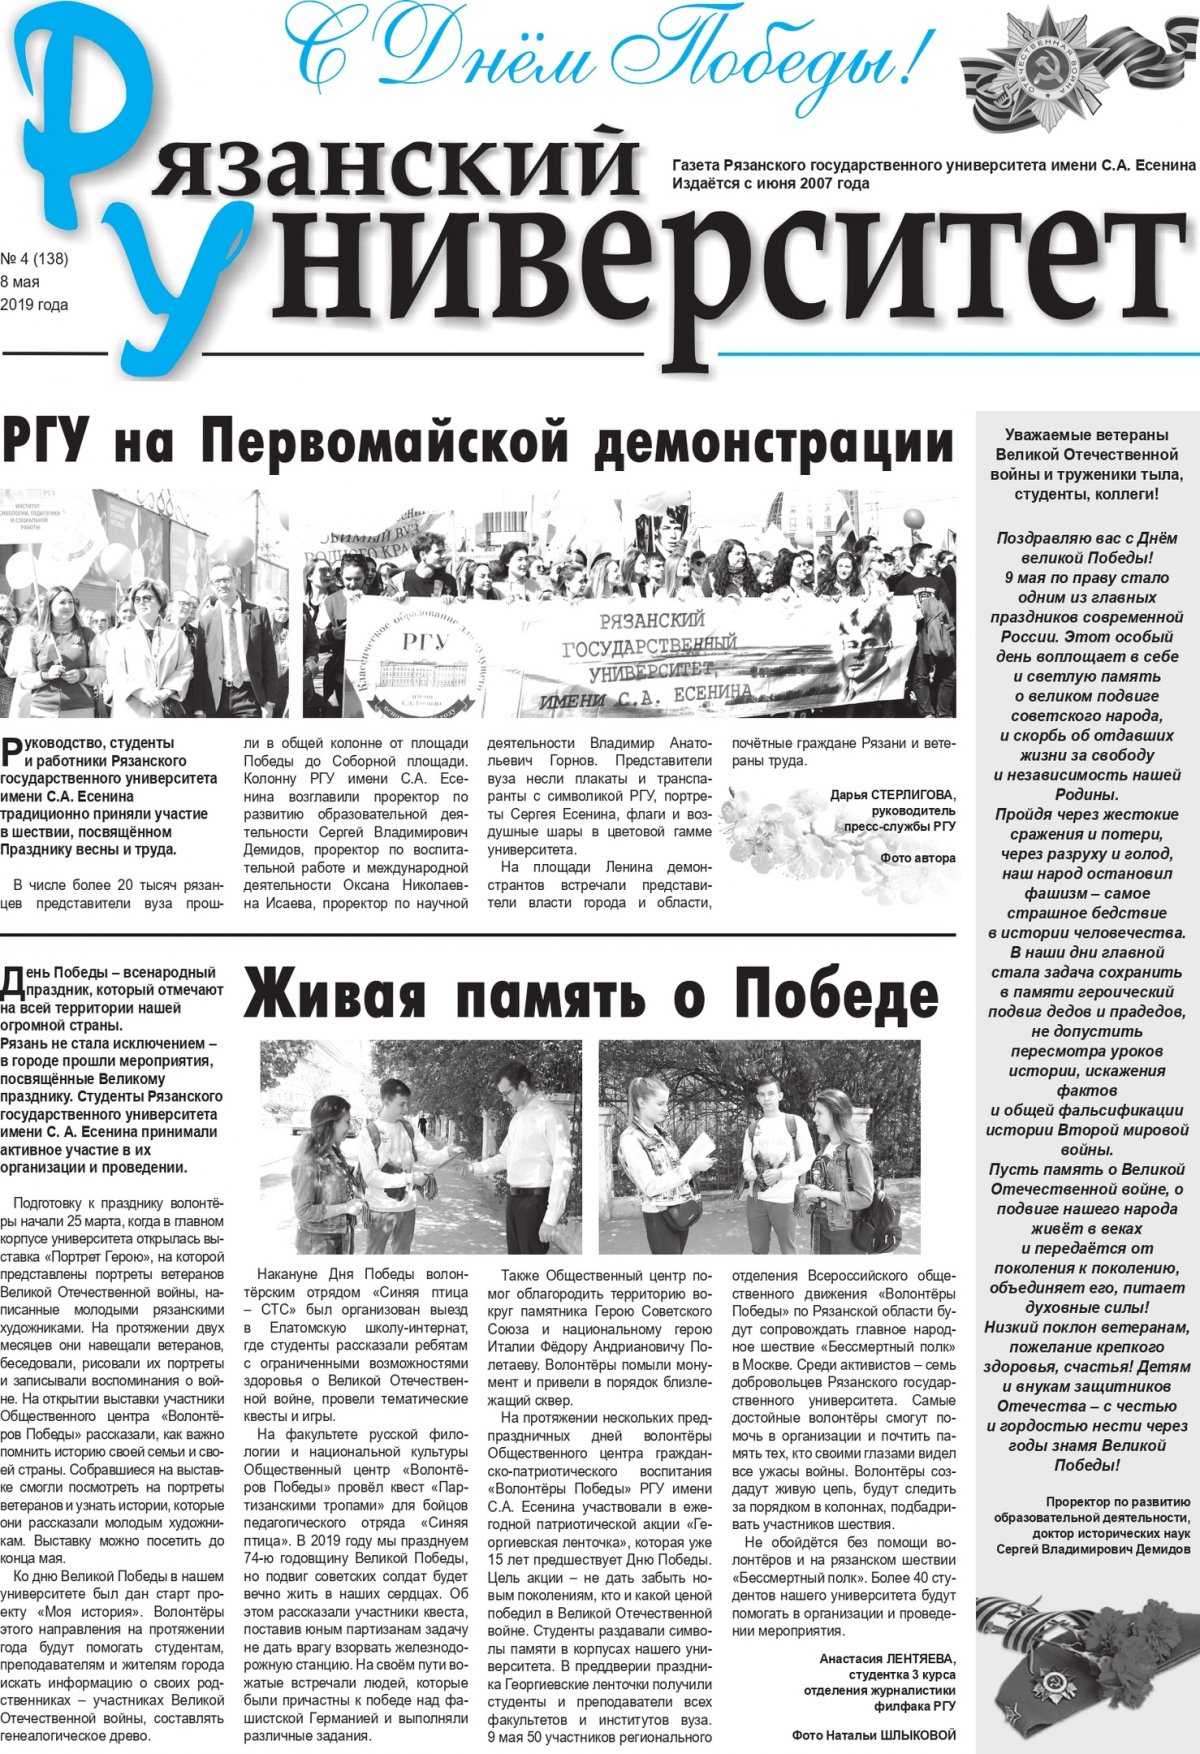 📰 Читайте в новом выпуске газеты «Рязанский университет»: первомайская демонстрация и живая память о Победе